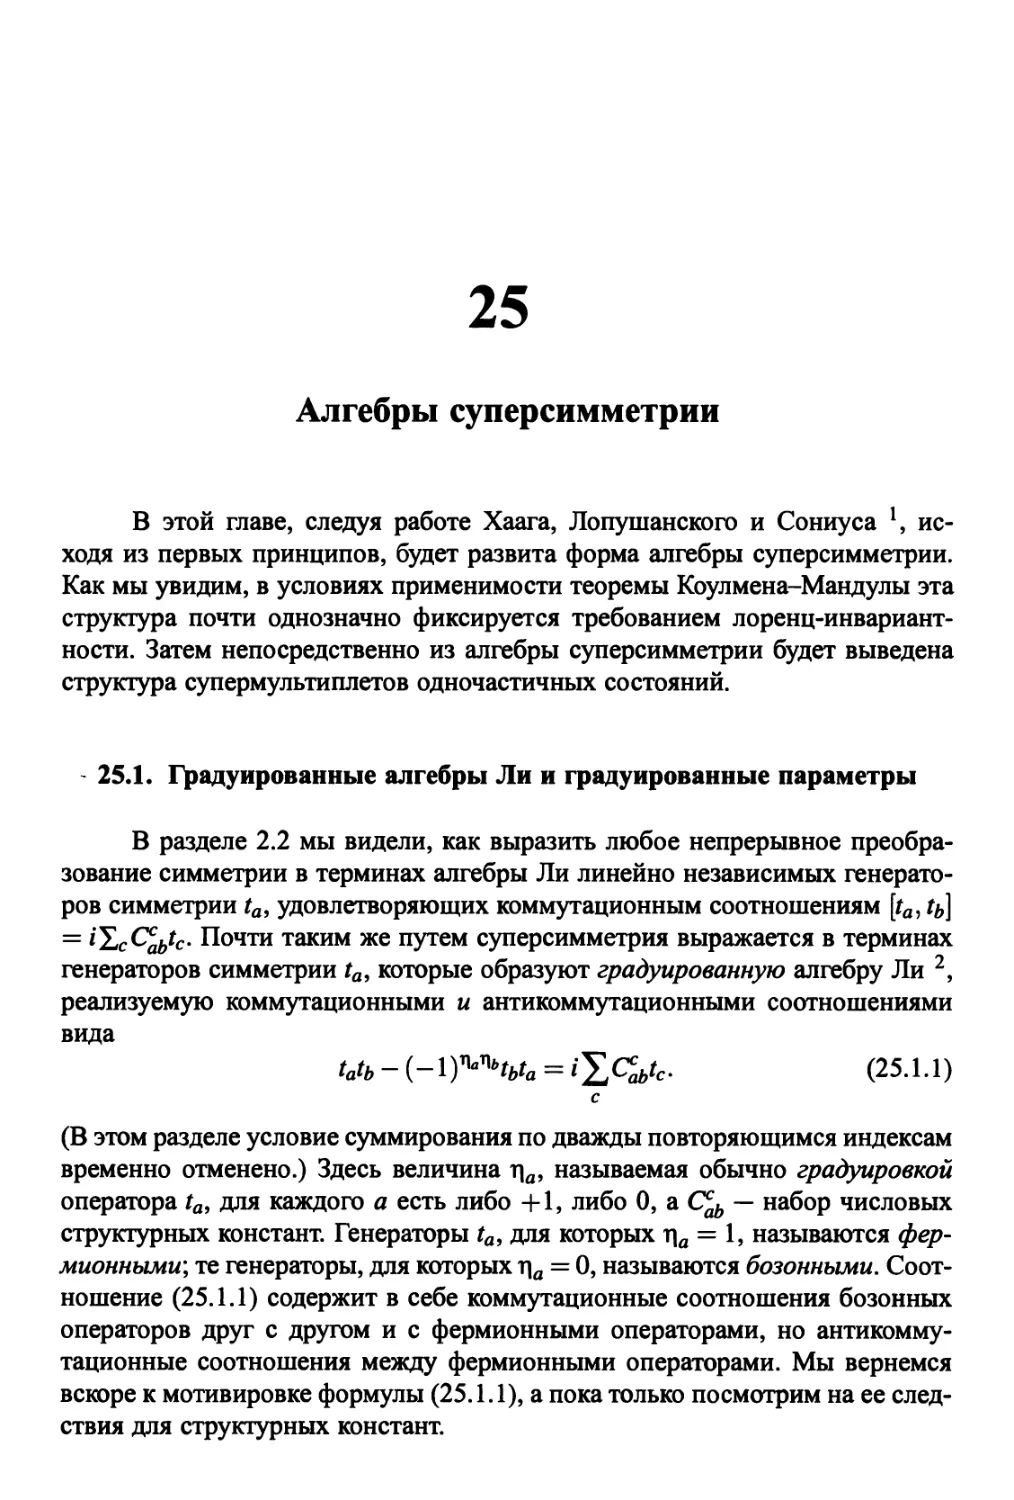 25. Алгебры суперсимметрии